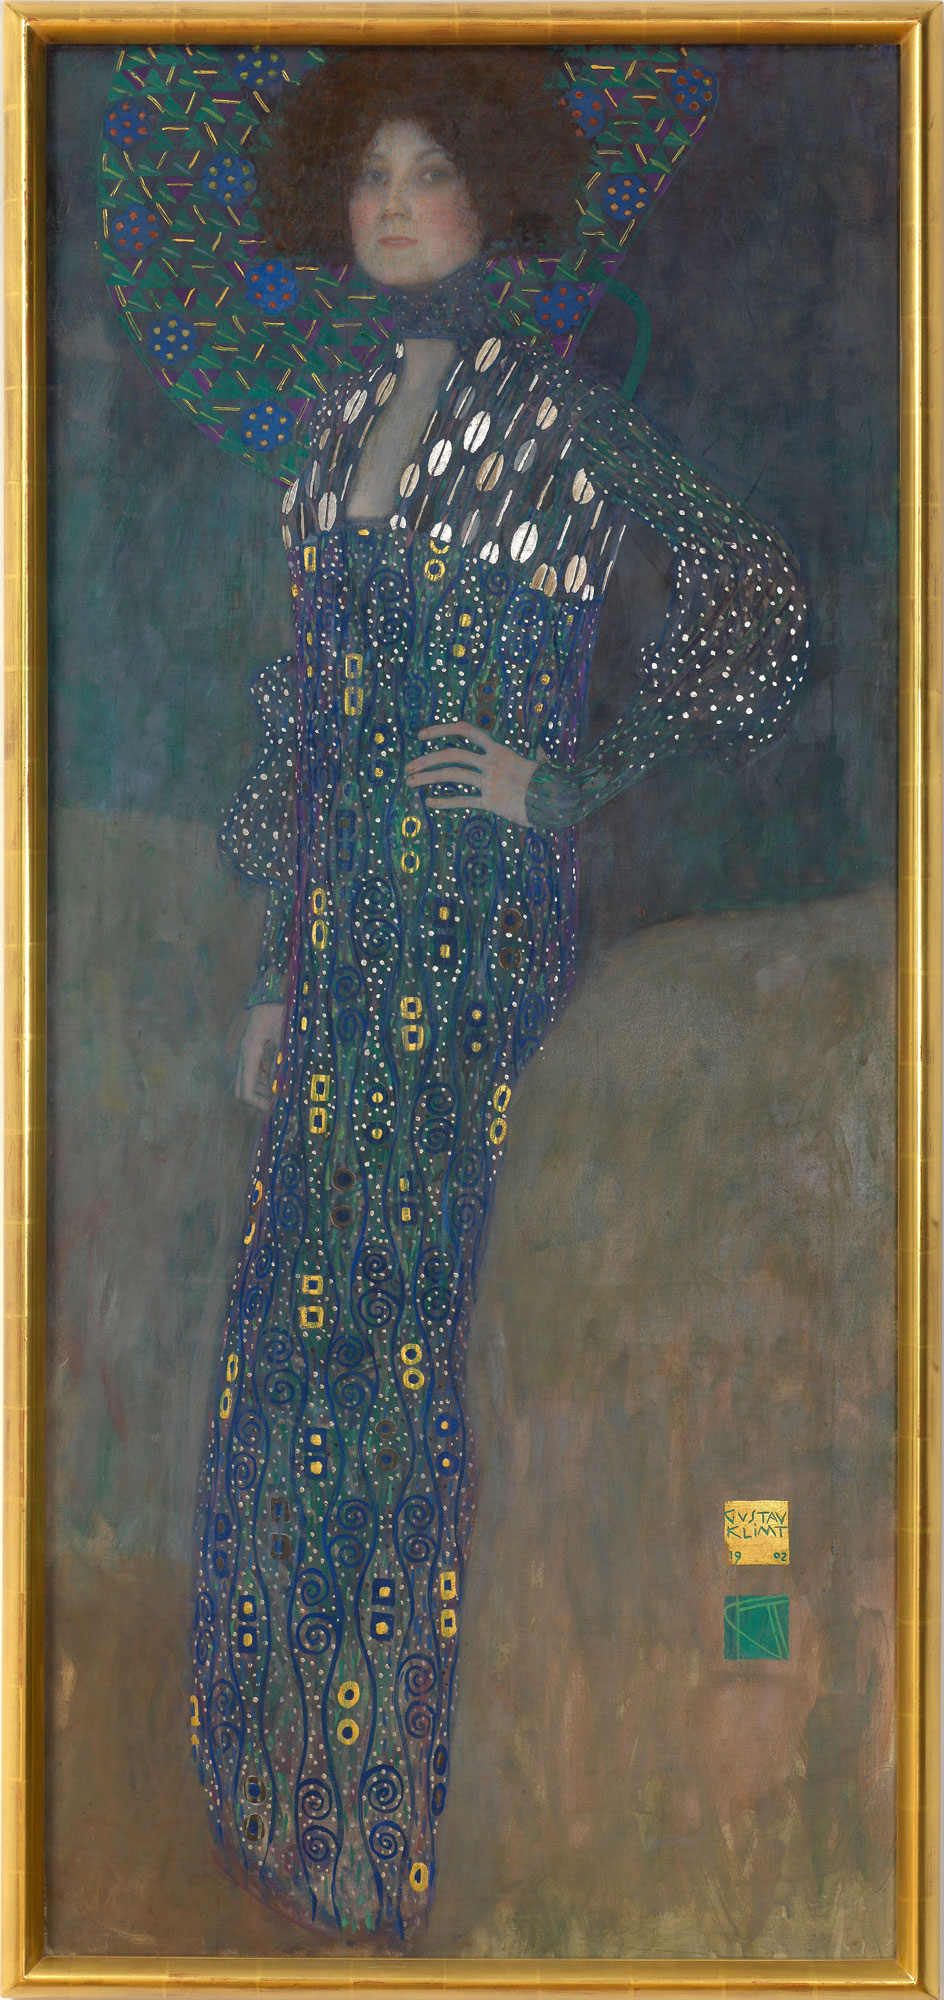 Gustav Klimt, Emilie Flöge (1902; oil on canvas, 178 x 80 cm; Vienna, Wien Museum)